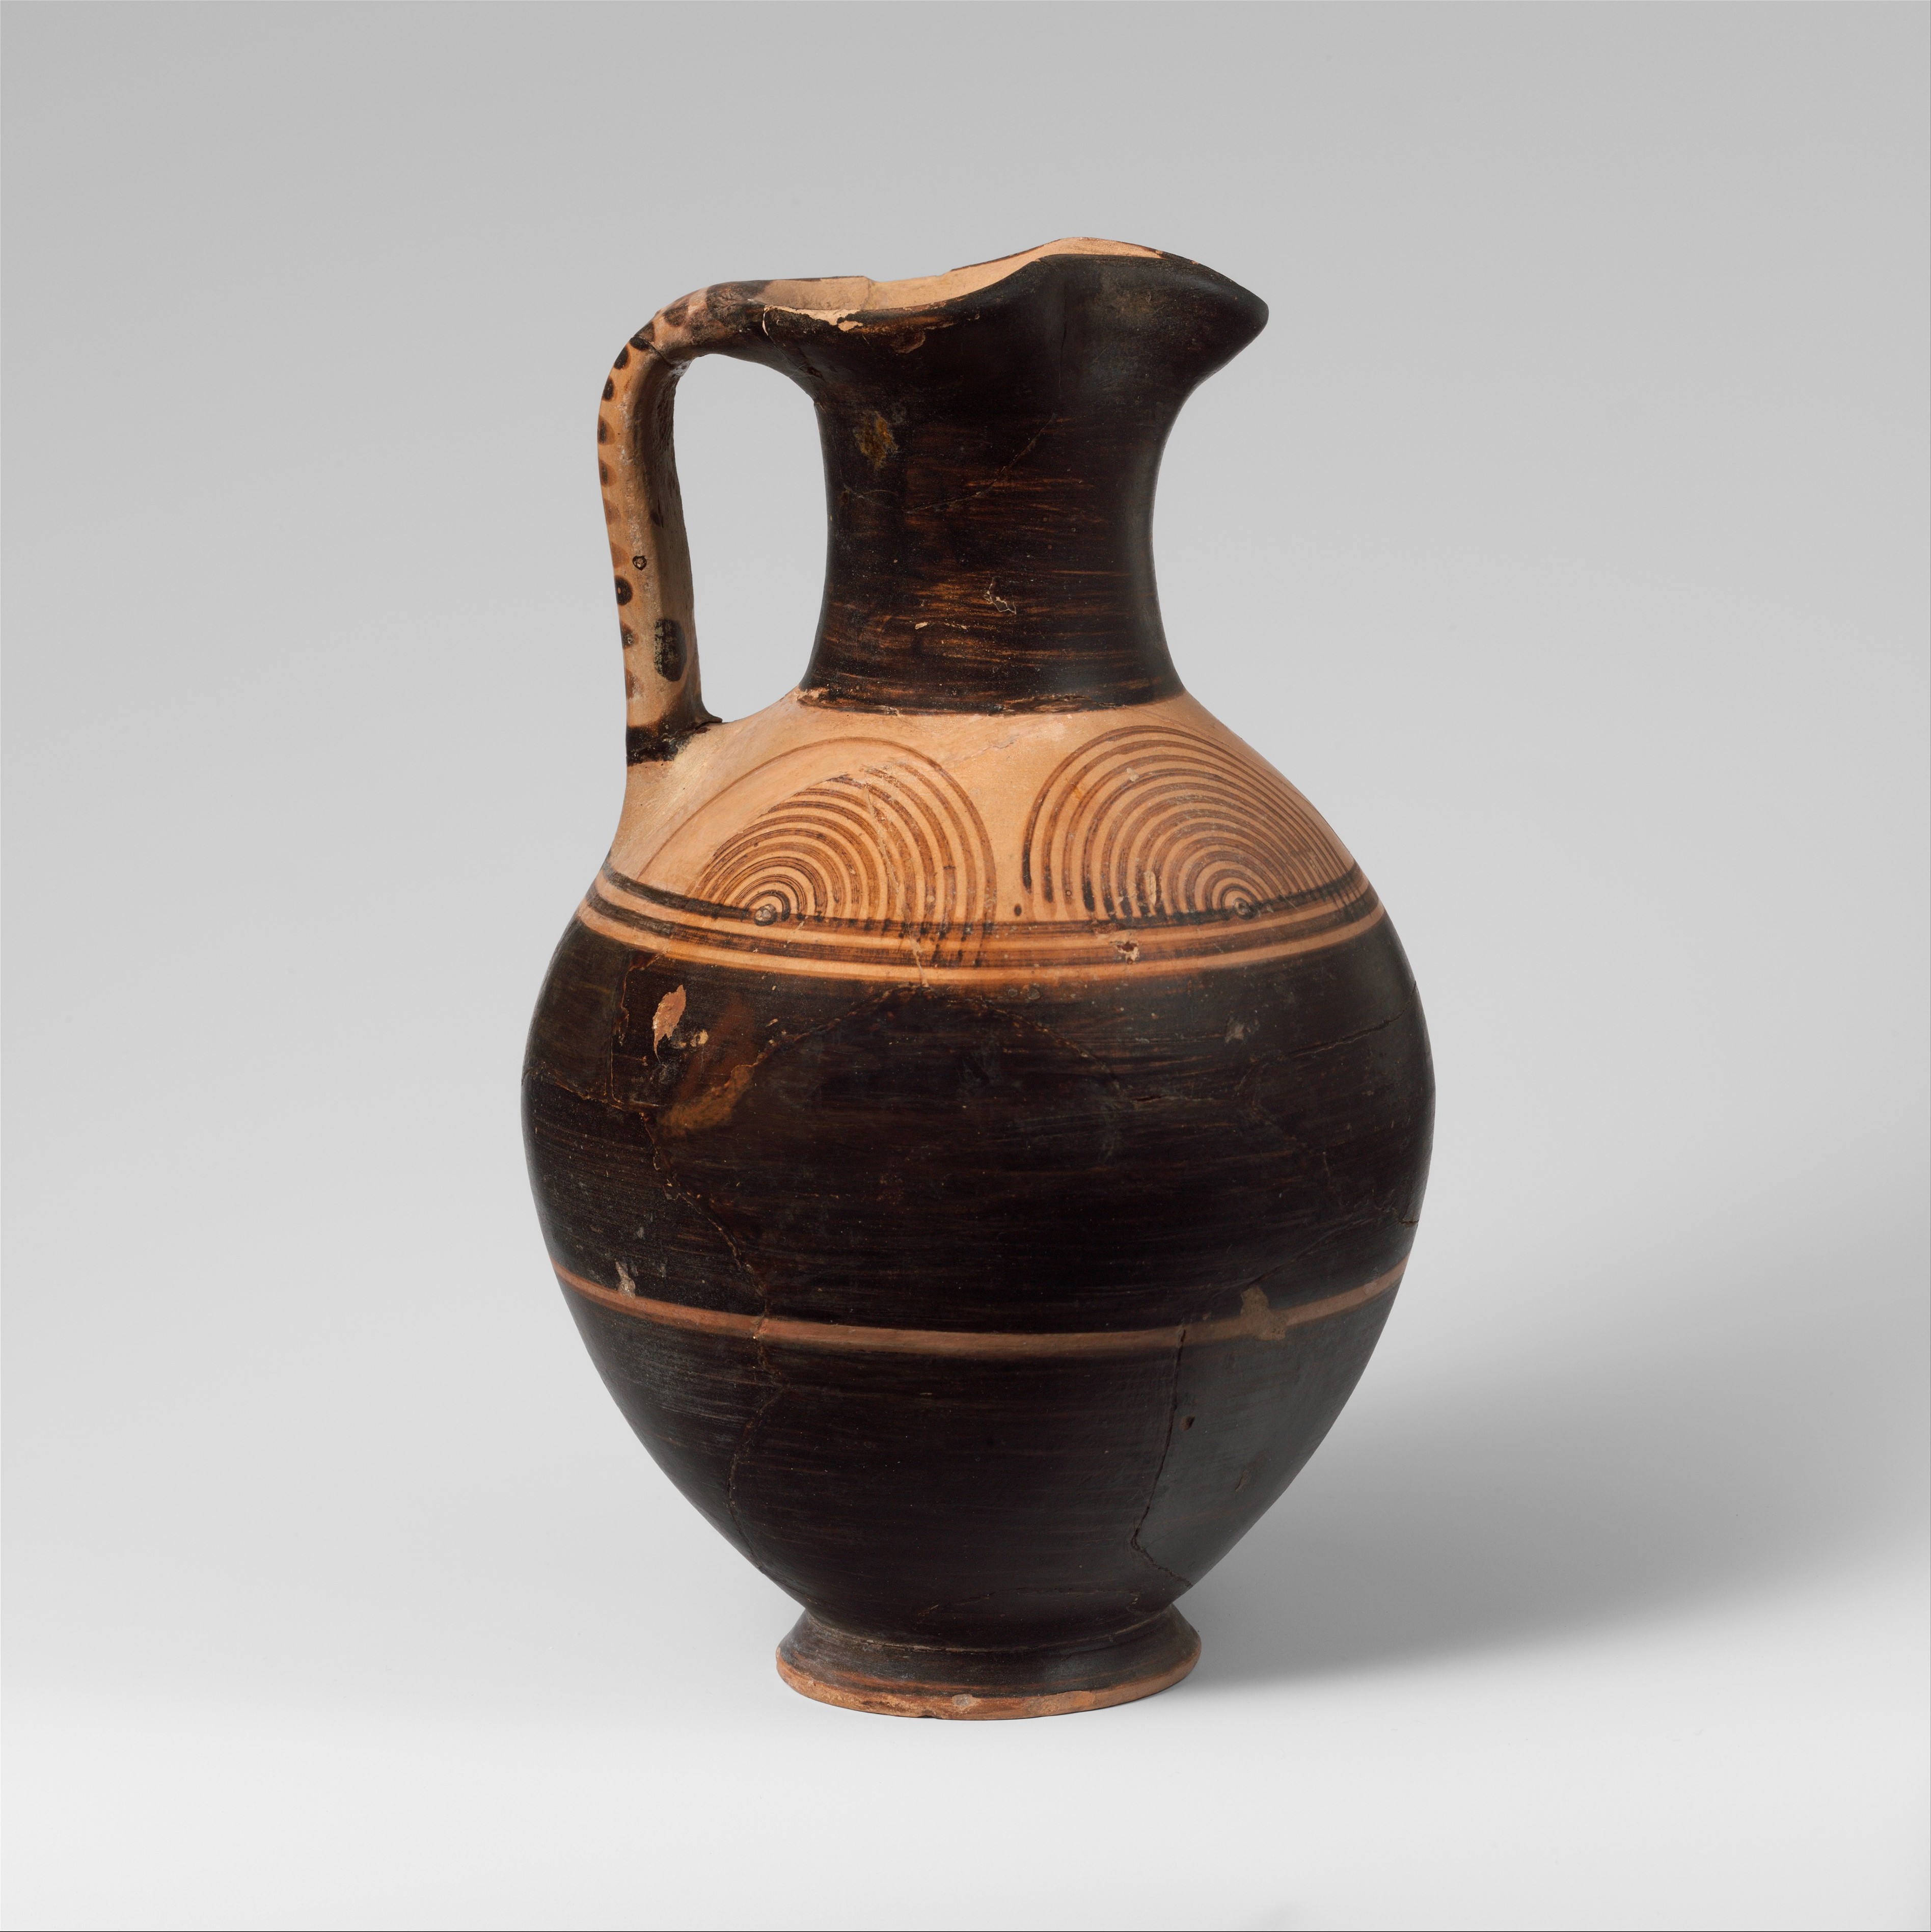 ceramic vase set of fileterracotta oinochoe jug met dp132634 wikimedia commons for fileterracotta oinochoe jug met dp132634